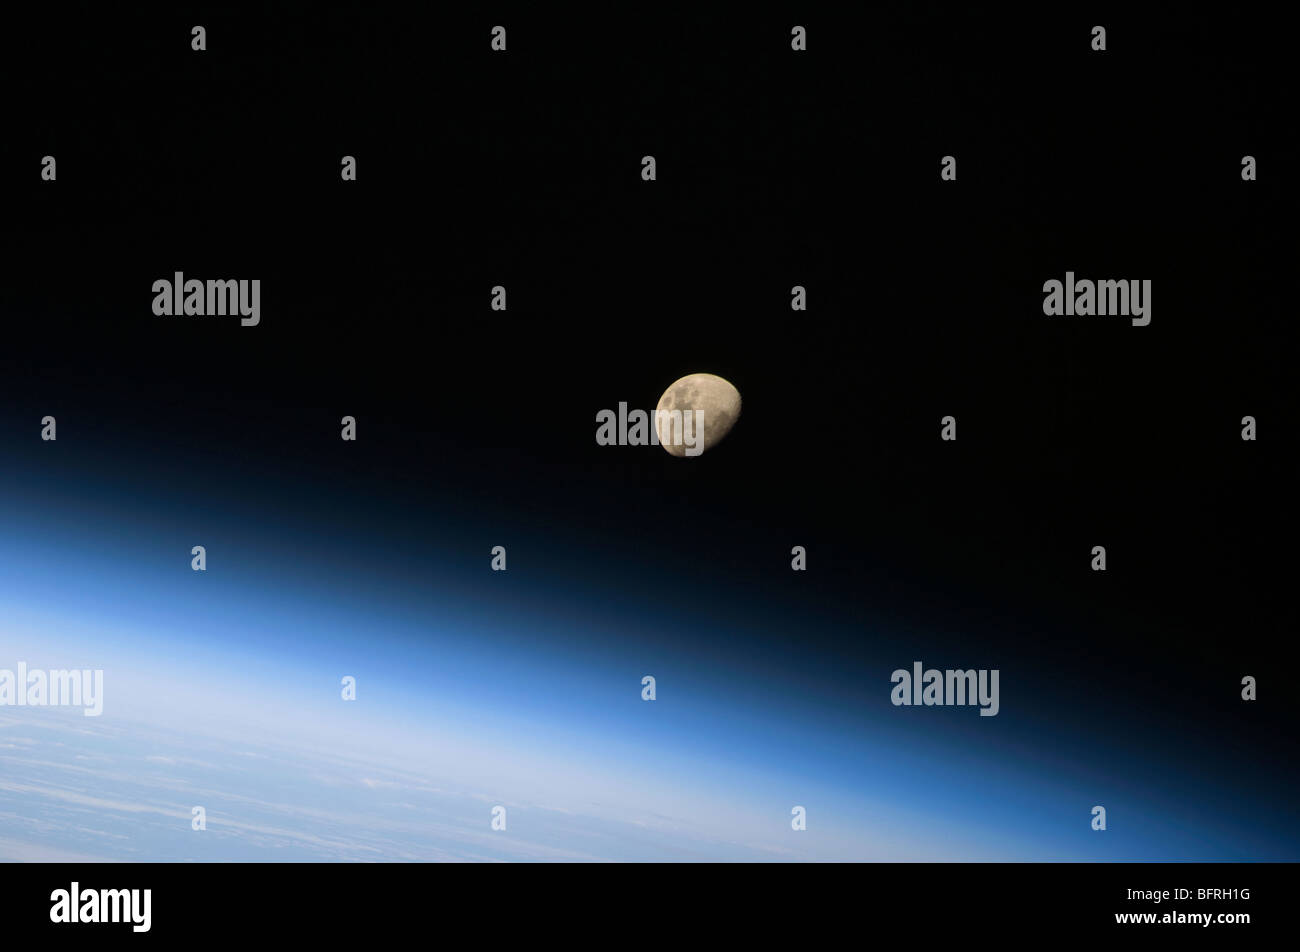 Agosto 30, 2009 - Una menguante Luna visible por encima de la atmósfera de la tierra. Foto de stock